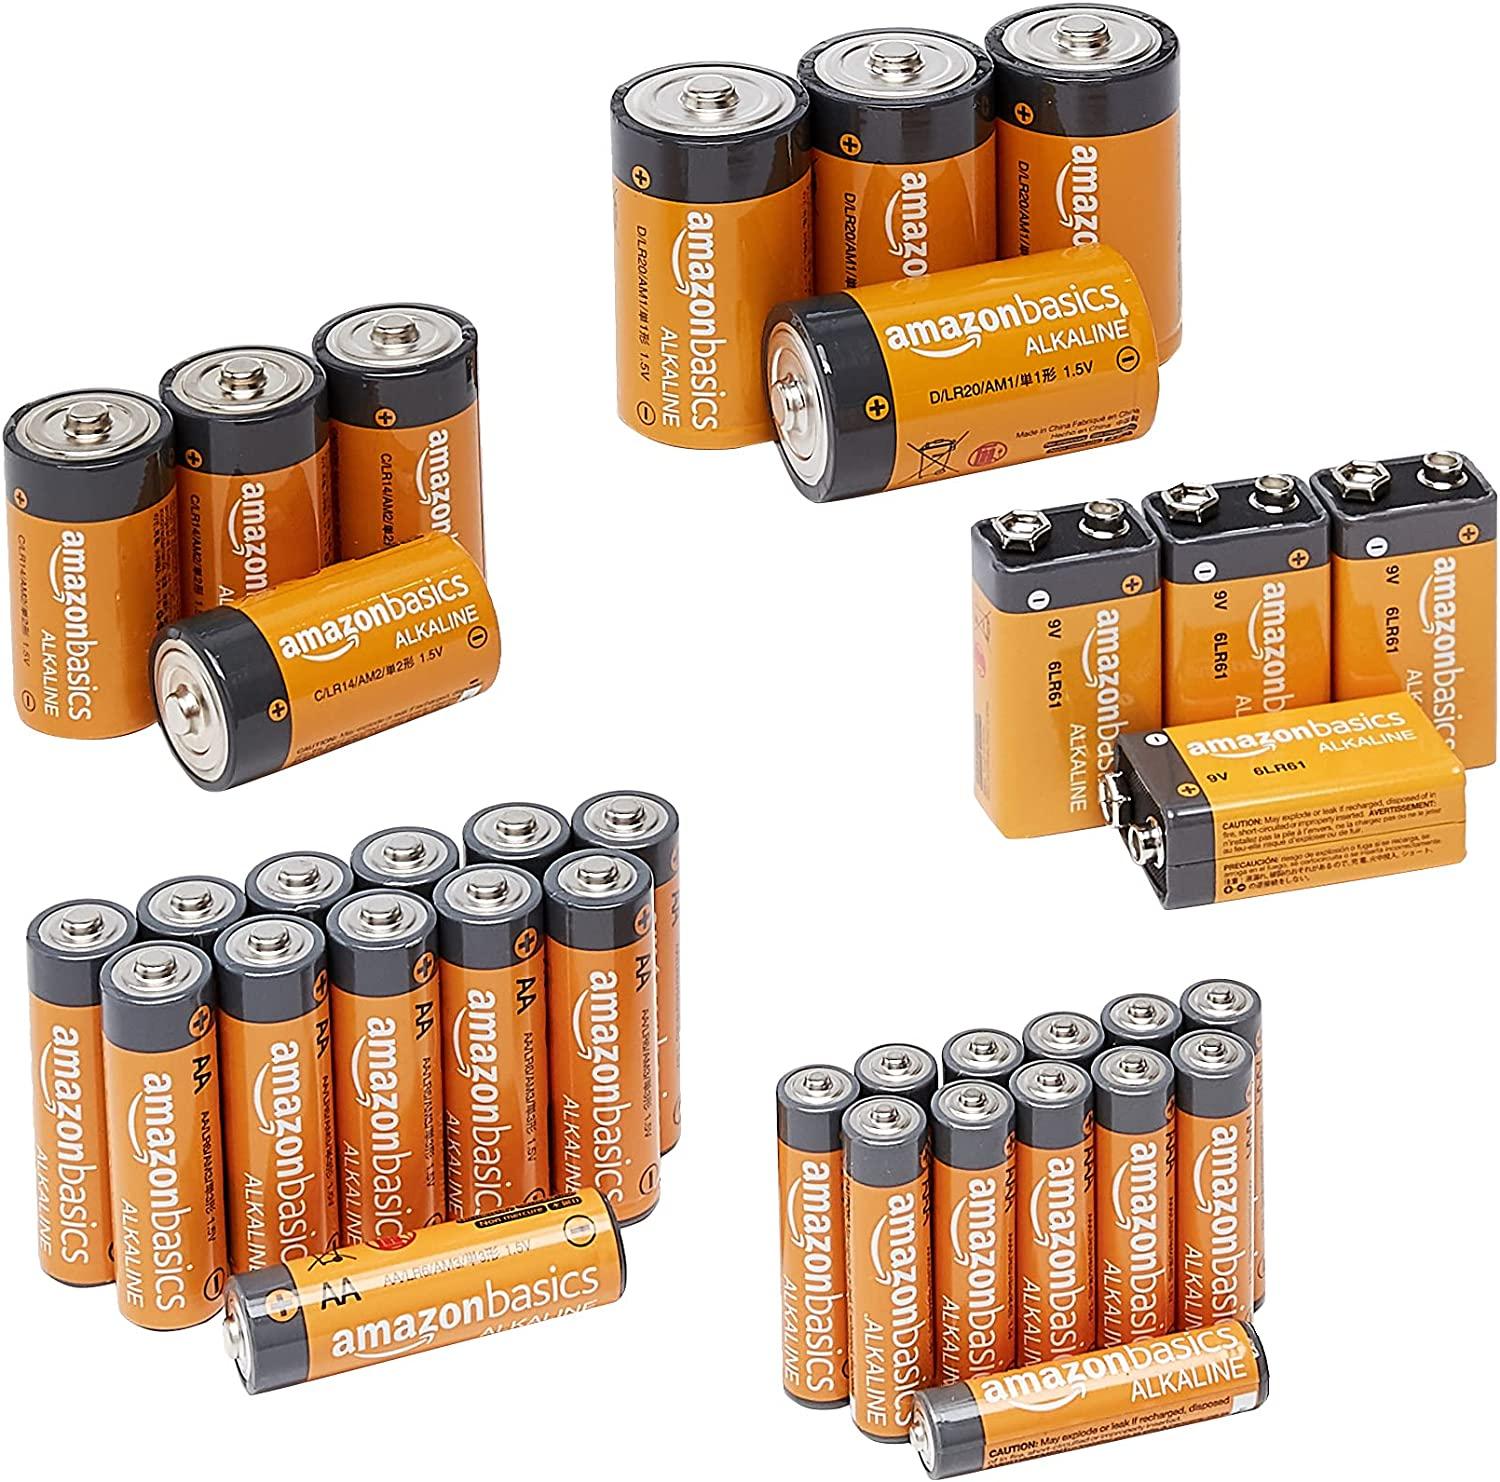 Amazon Basics 36 Count Alkaline Battery Starter Pack for $12.16 Shipped